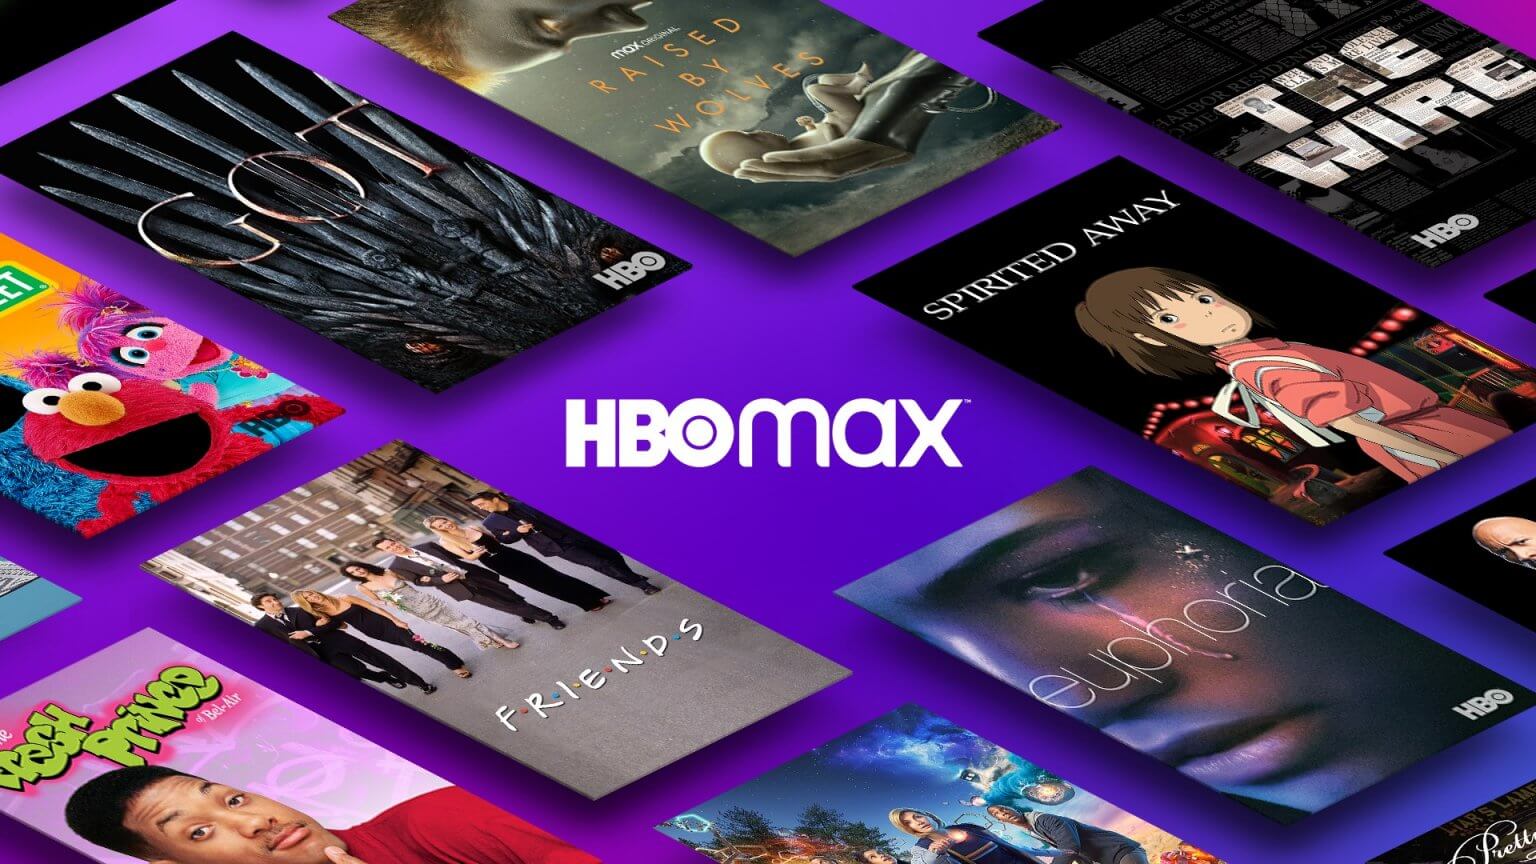 HBO Max não terá mais lançamento simultâneo com cinemas nos EUA